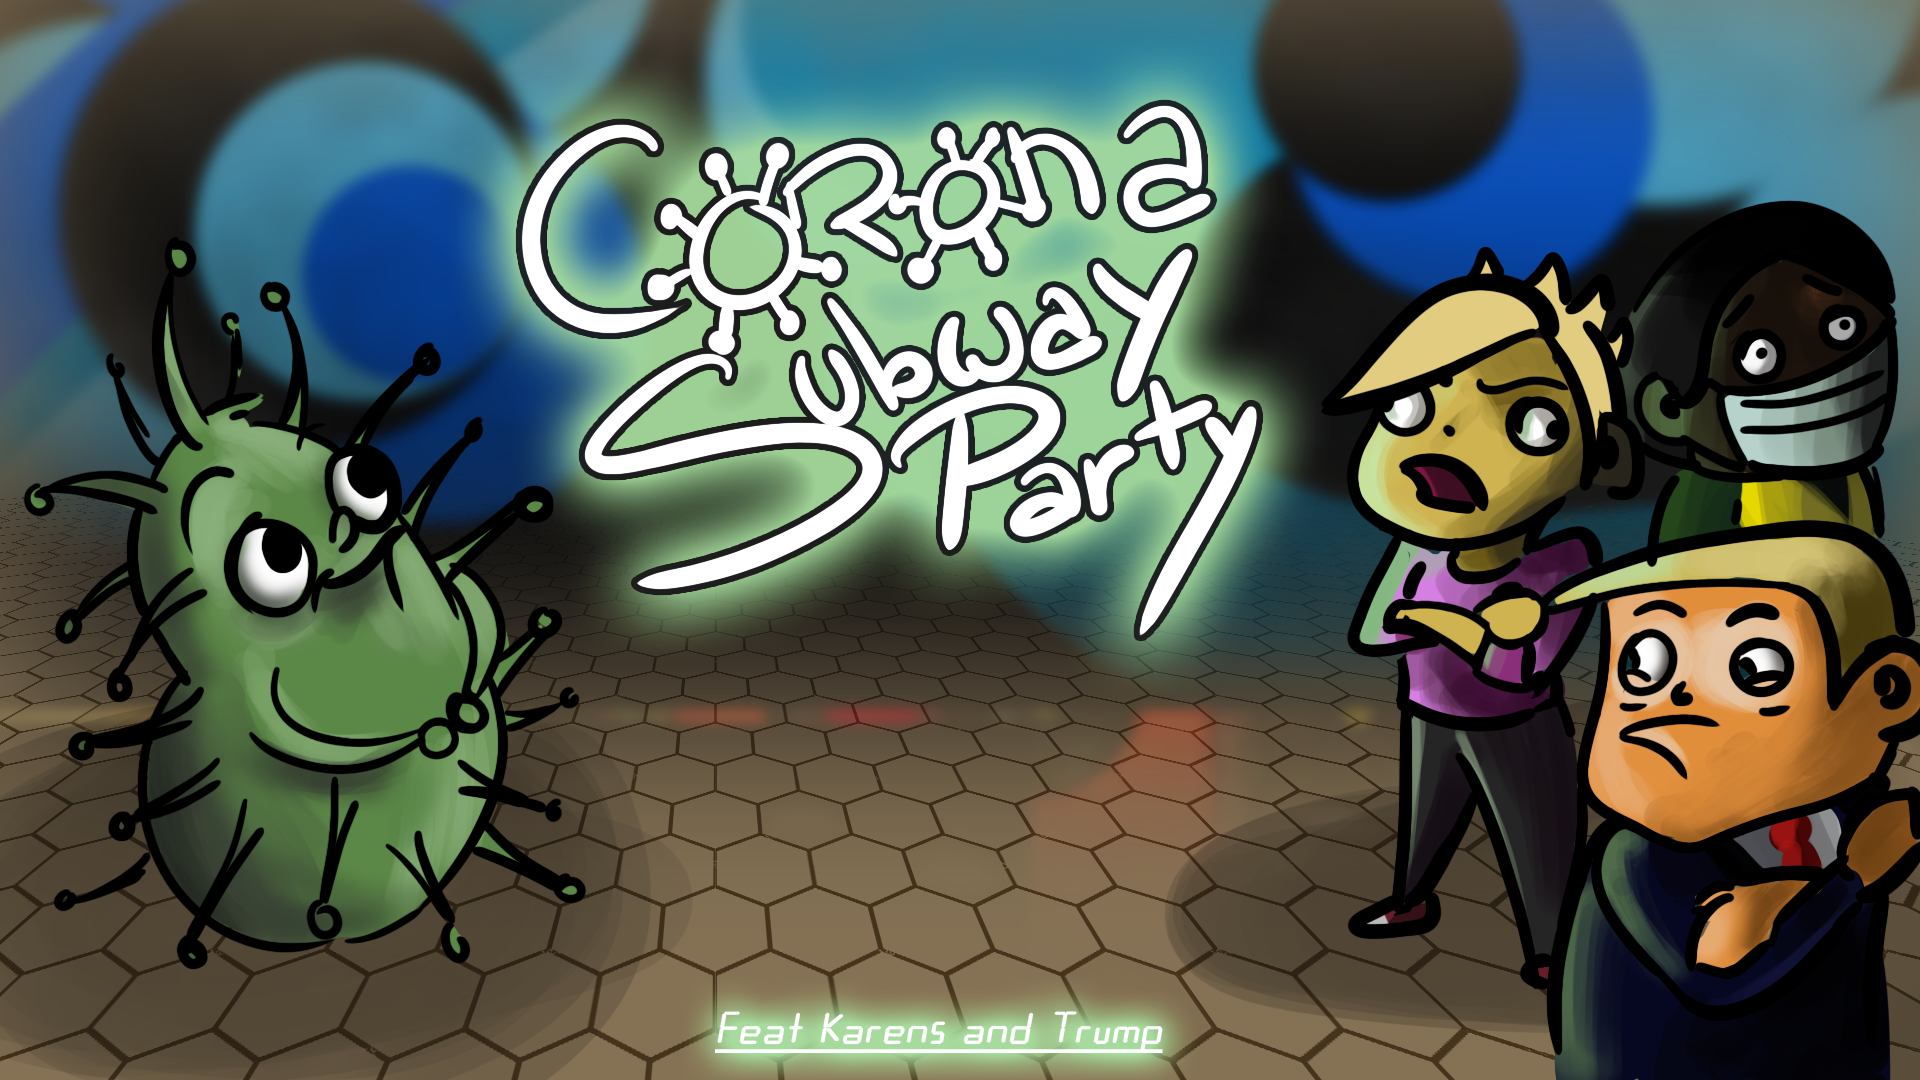 Corona subway party